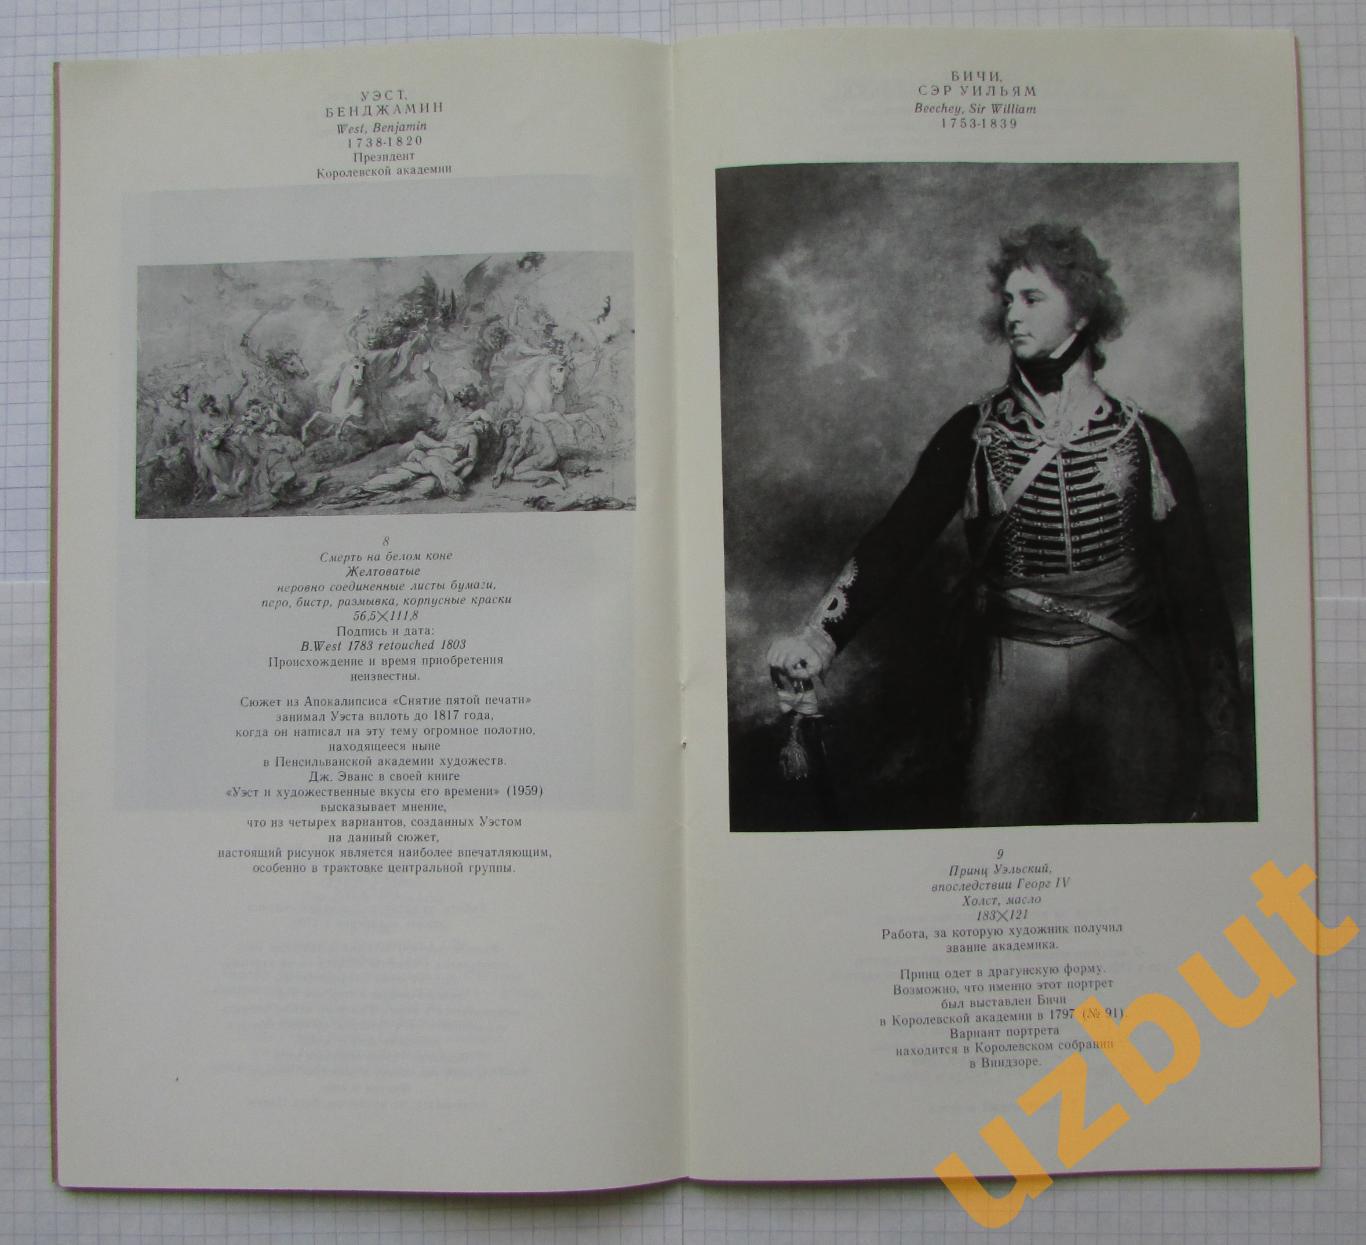 35 произведений из собрания королевской академии художеств каталог выставки 1978 1